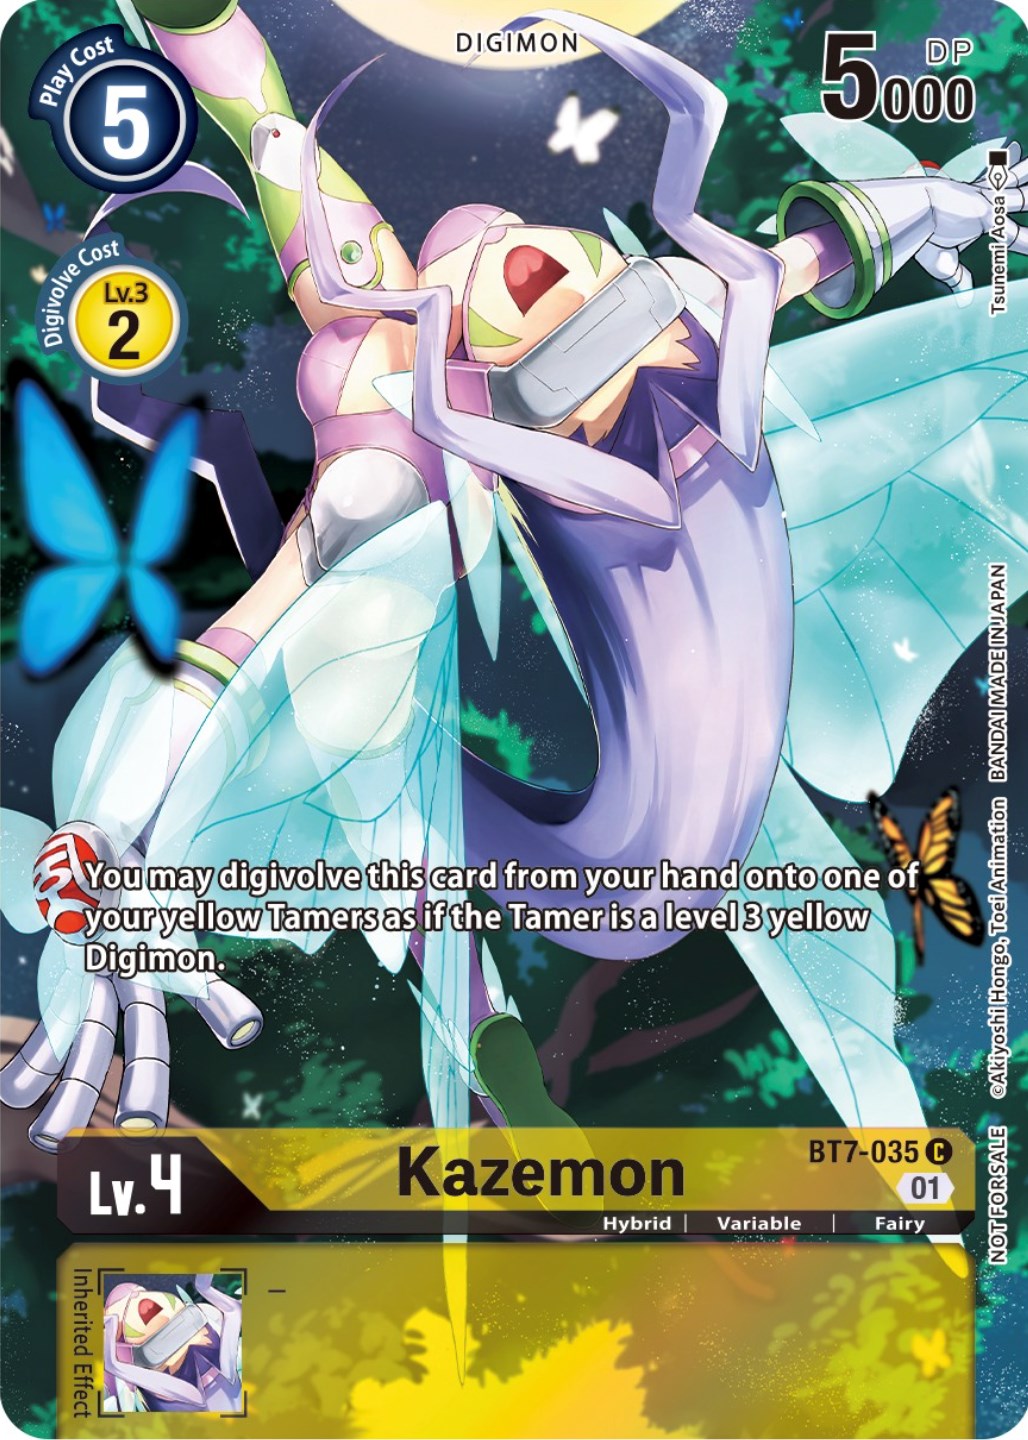 Kazemon [BT7-035] (2nd Anniversary Frontier Card) [Next Adventure Promos] | Devastation Store